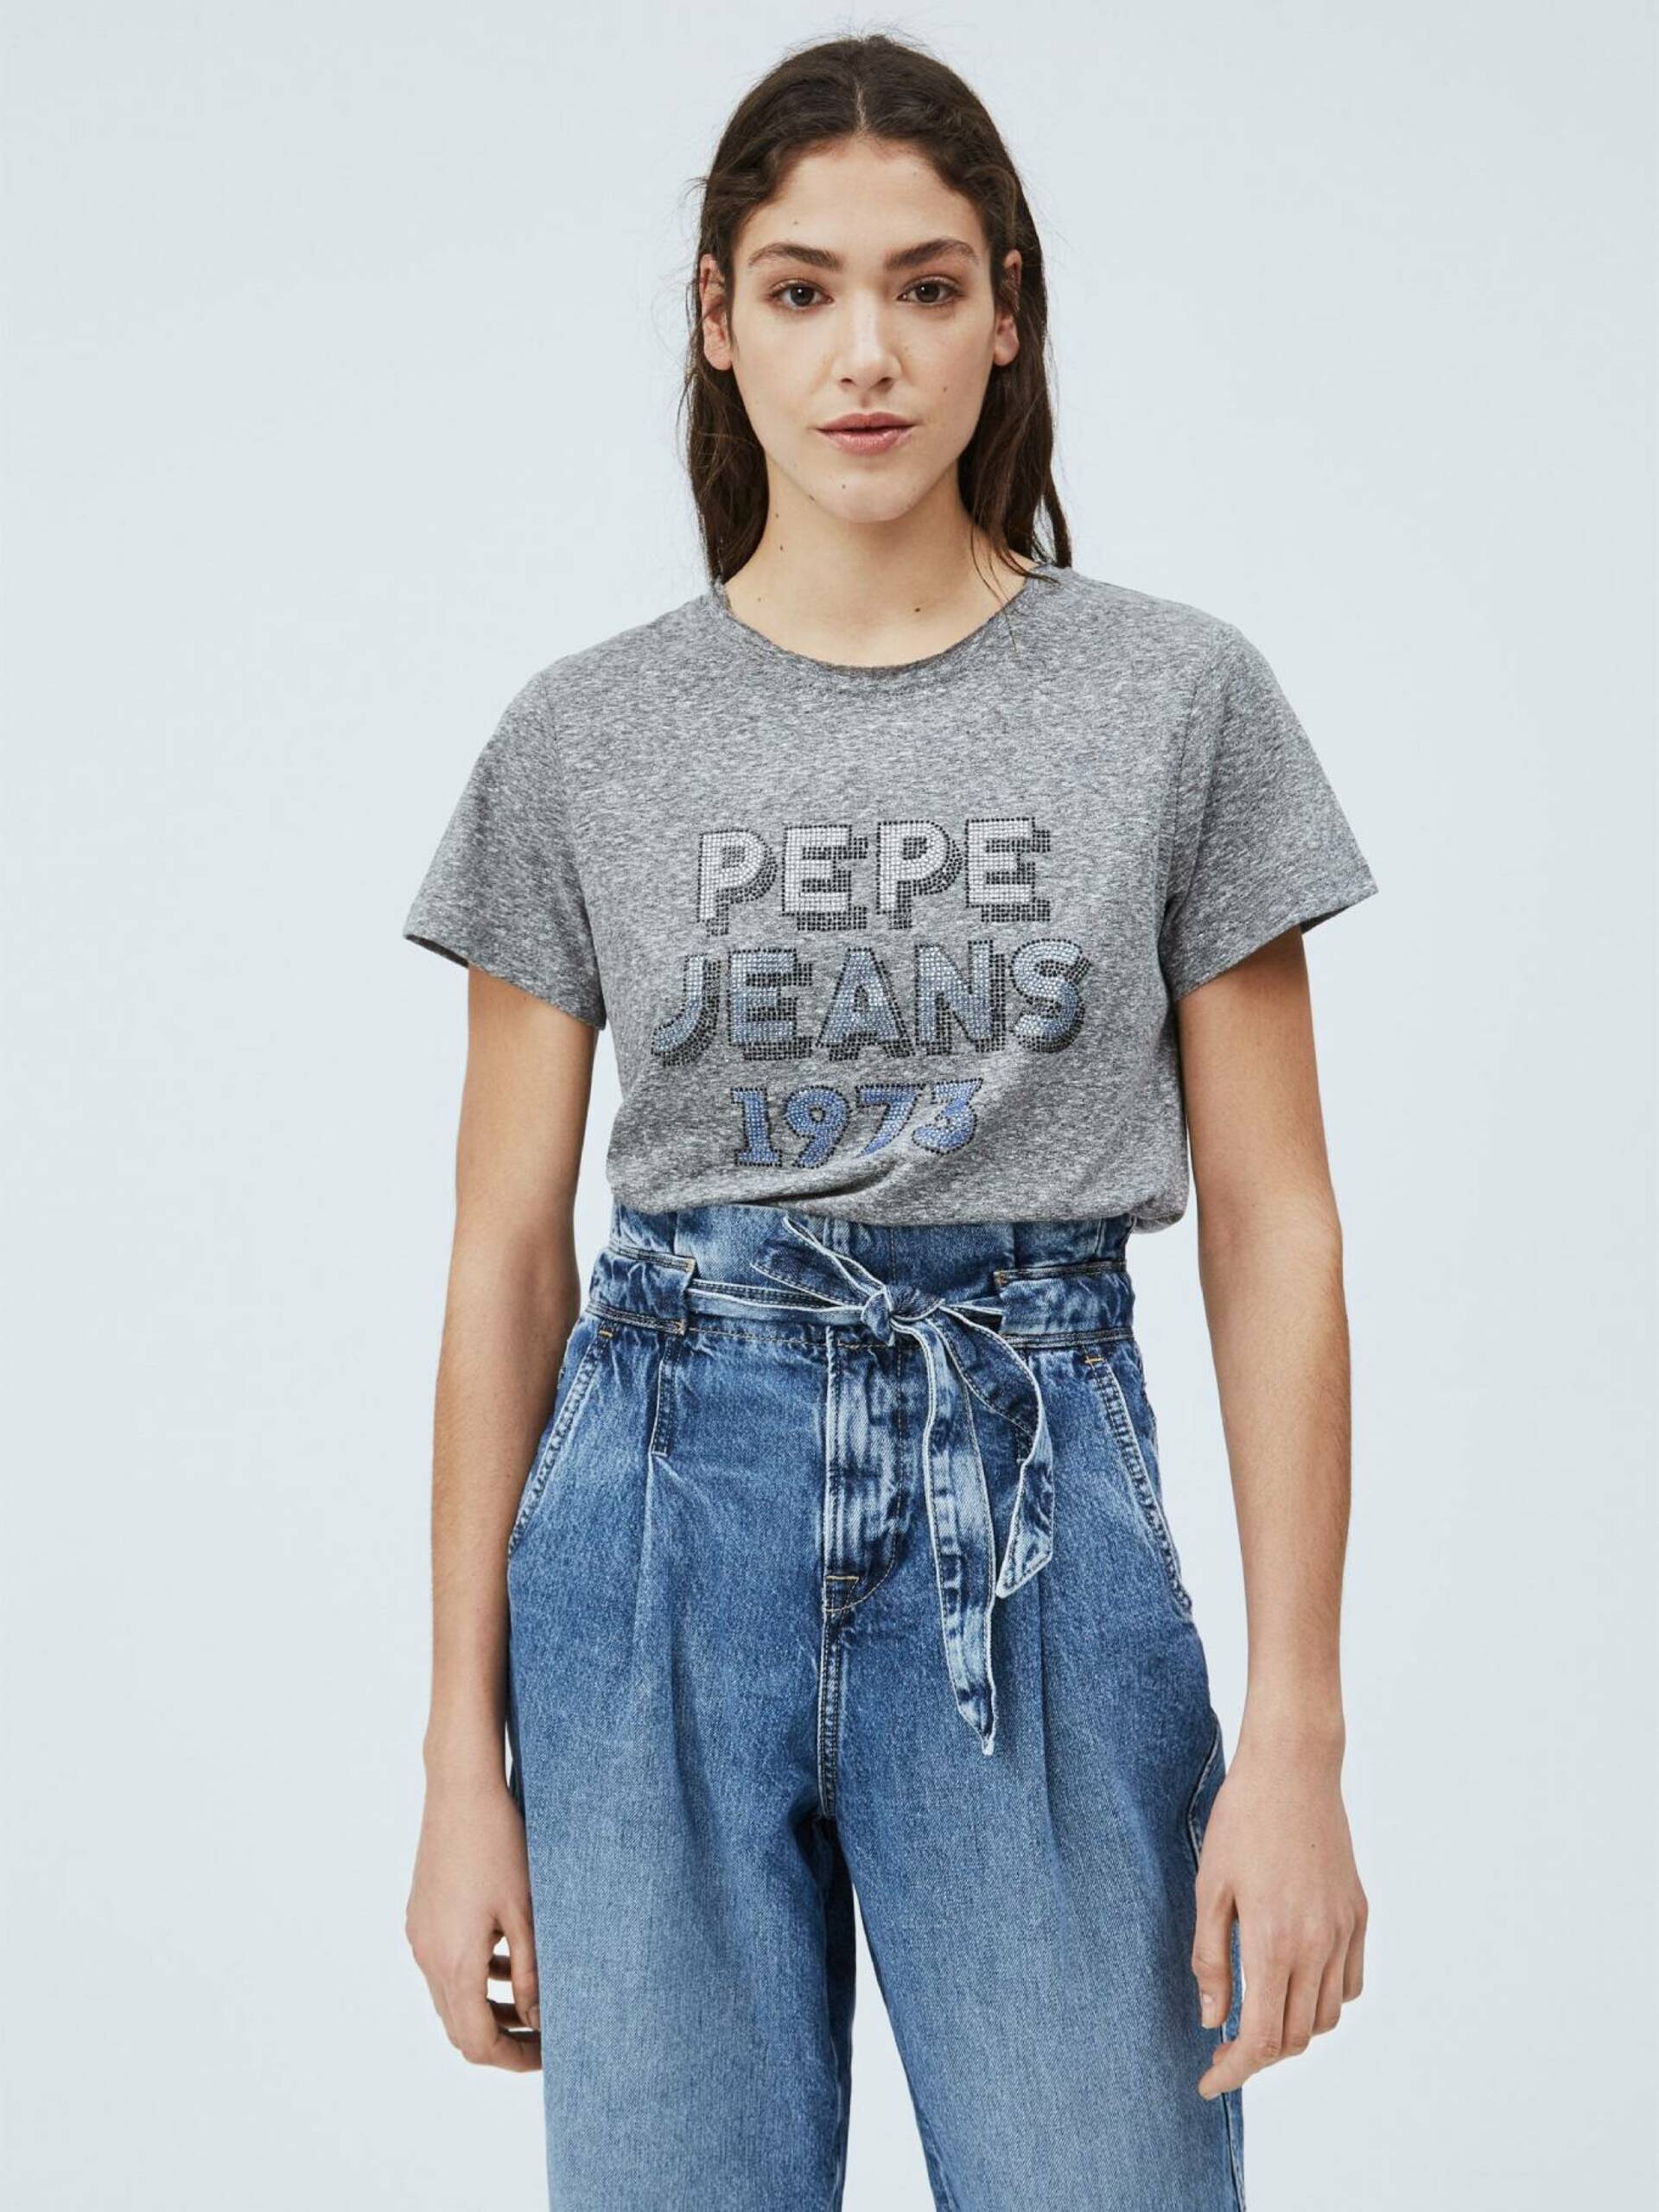 Pepe Jeans dámské šedé tričko Bibiana - XS (933)